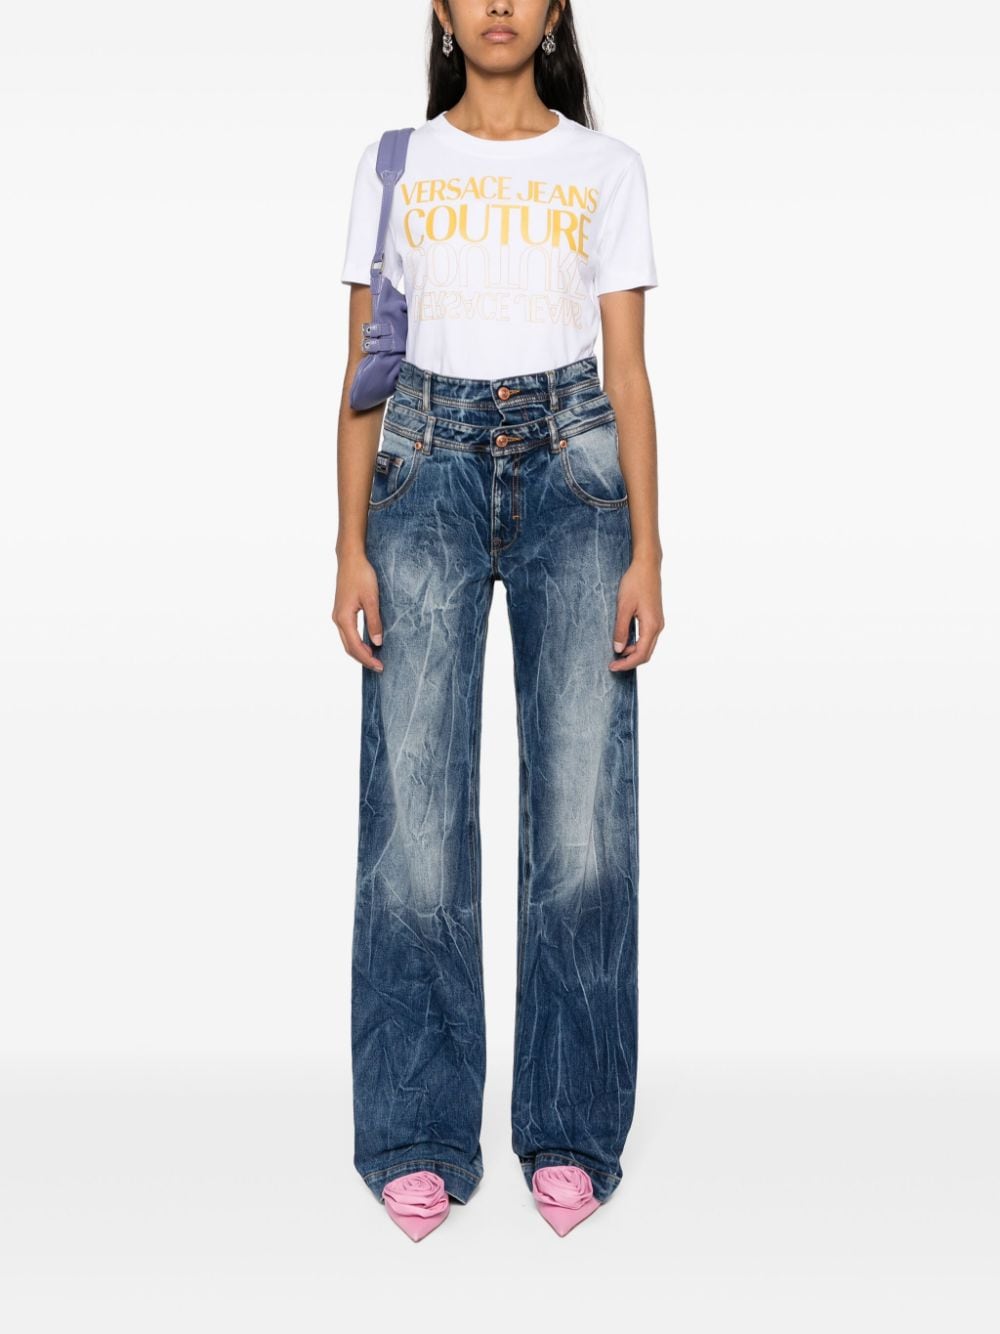 Versace Jeans Couture Katoenen T-shirt met logo - Wit